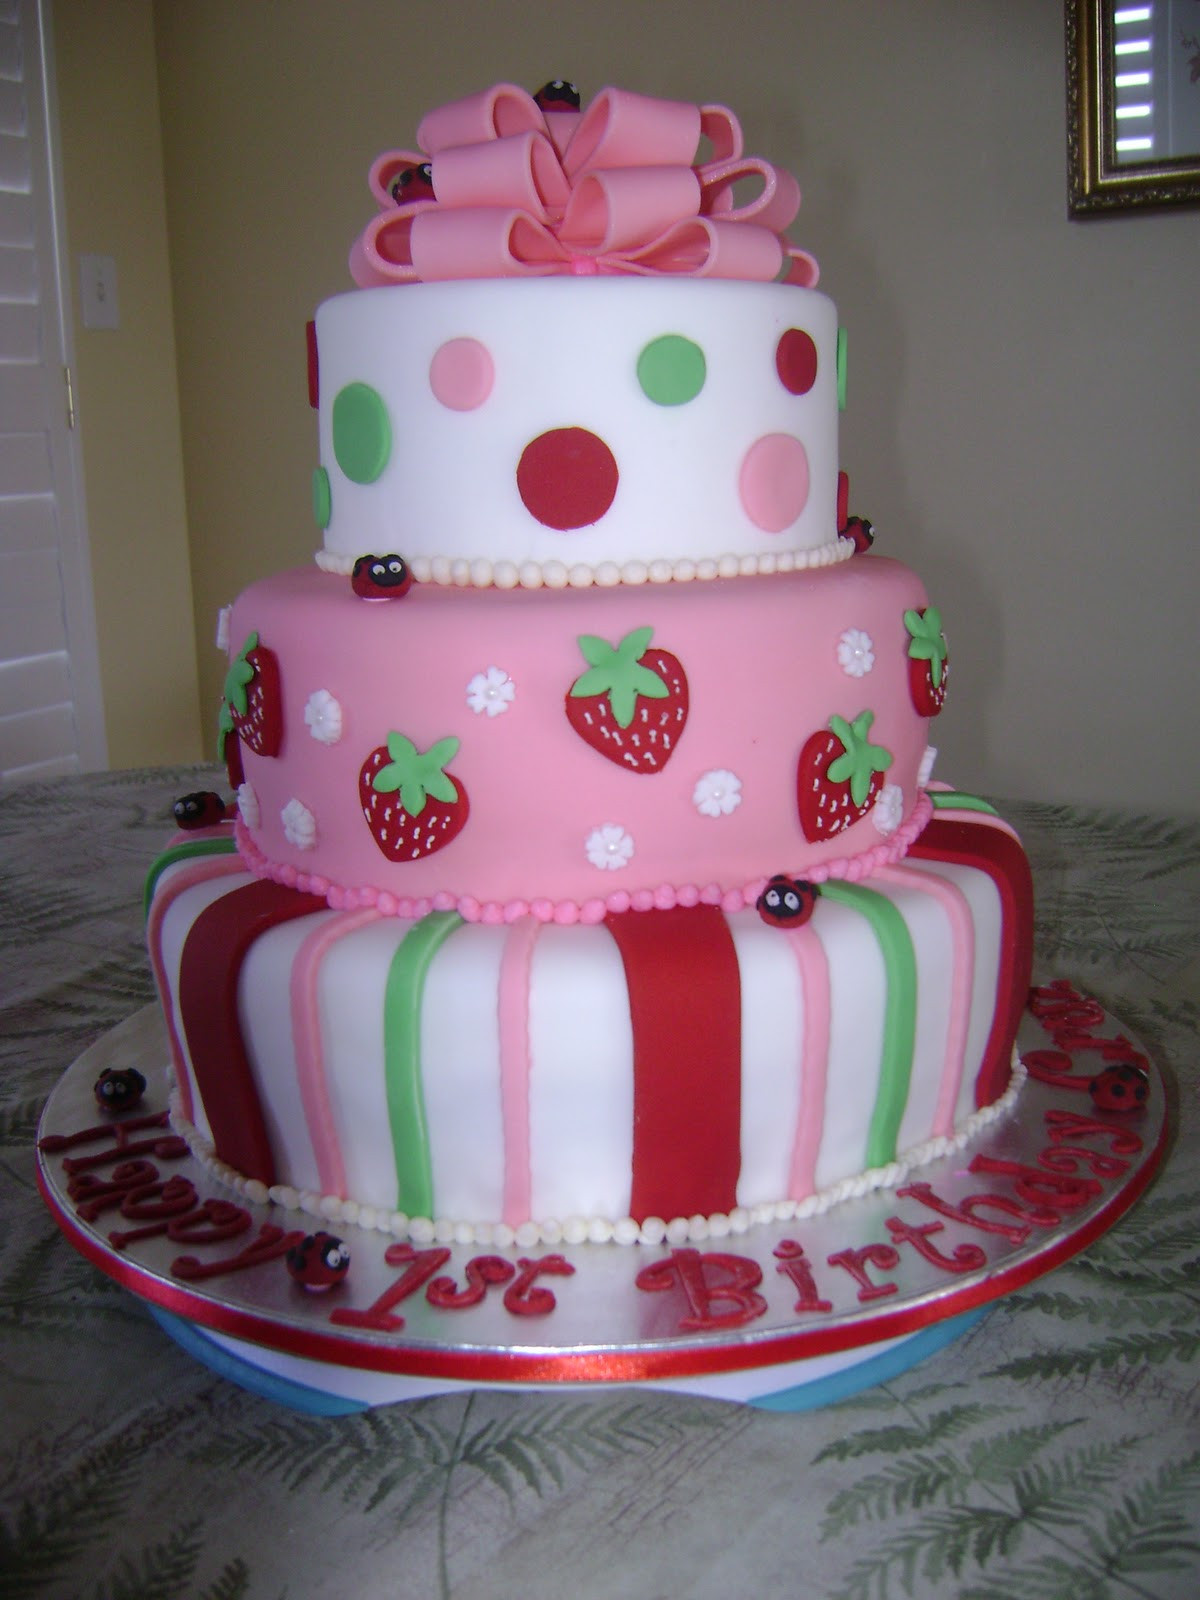 Strawberry Shortcake Birthday Cake Recipes
 MaryMel Cakes Strawberry Shortcake 1st Birthday